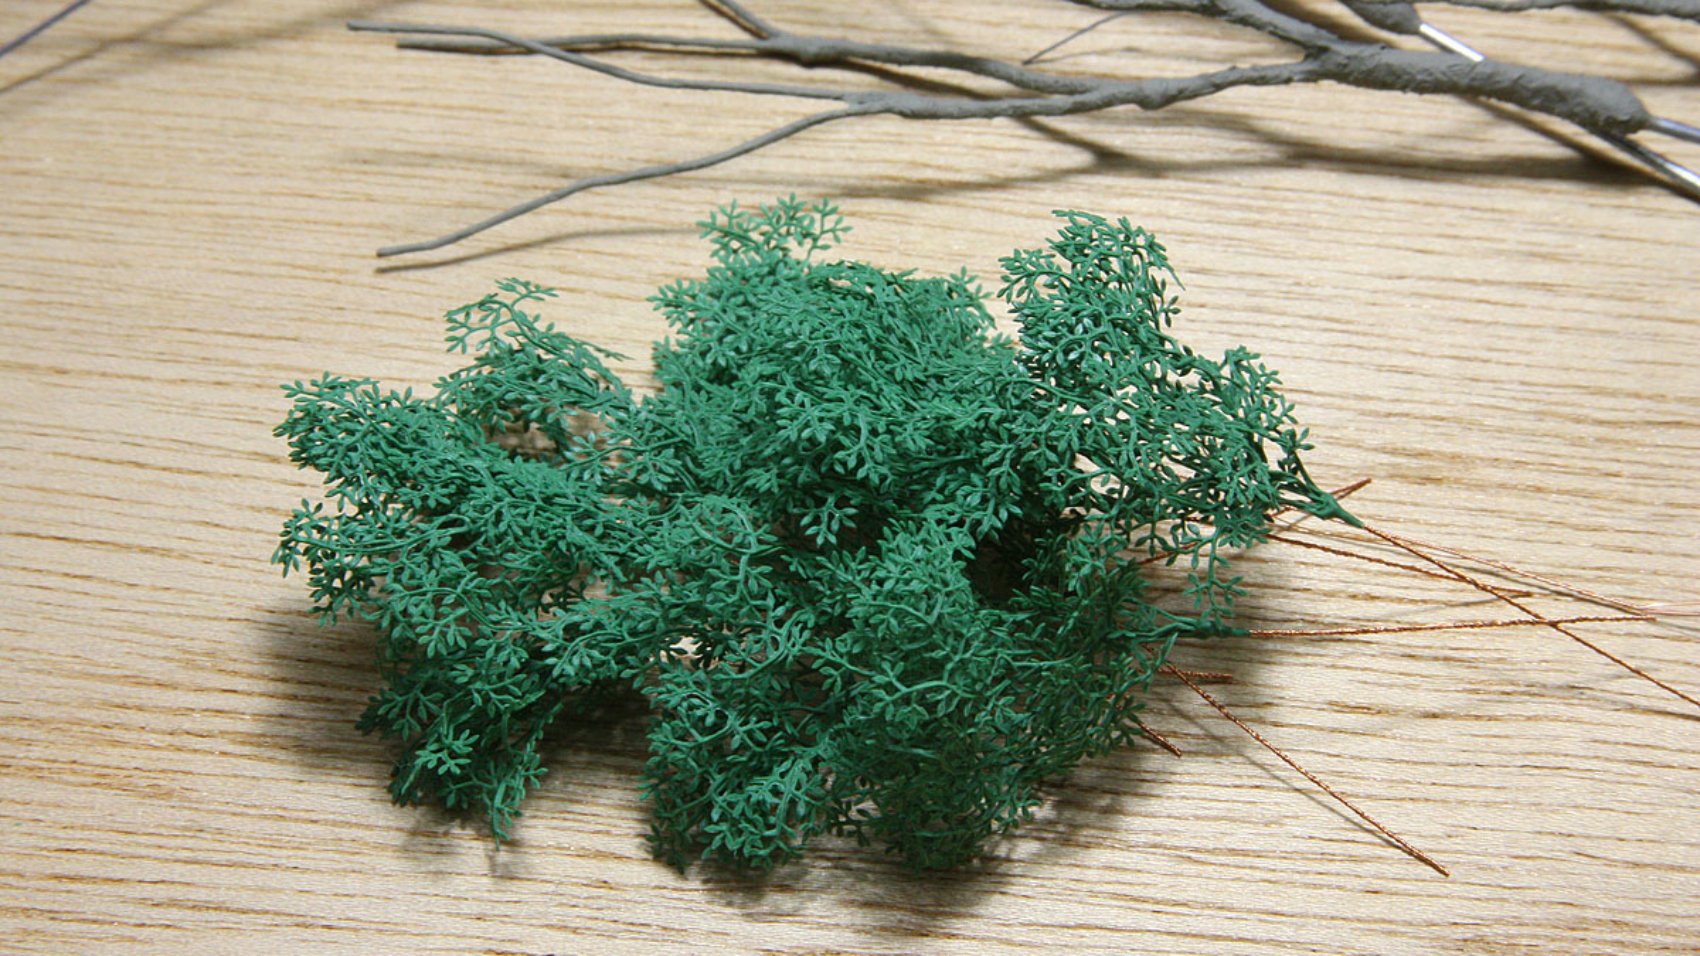 ジオラマリアルミニチュア樹木模型 広葉枝葉